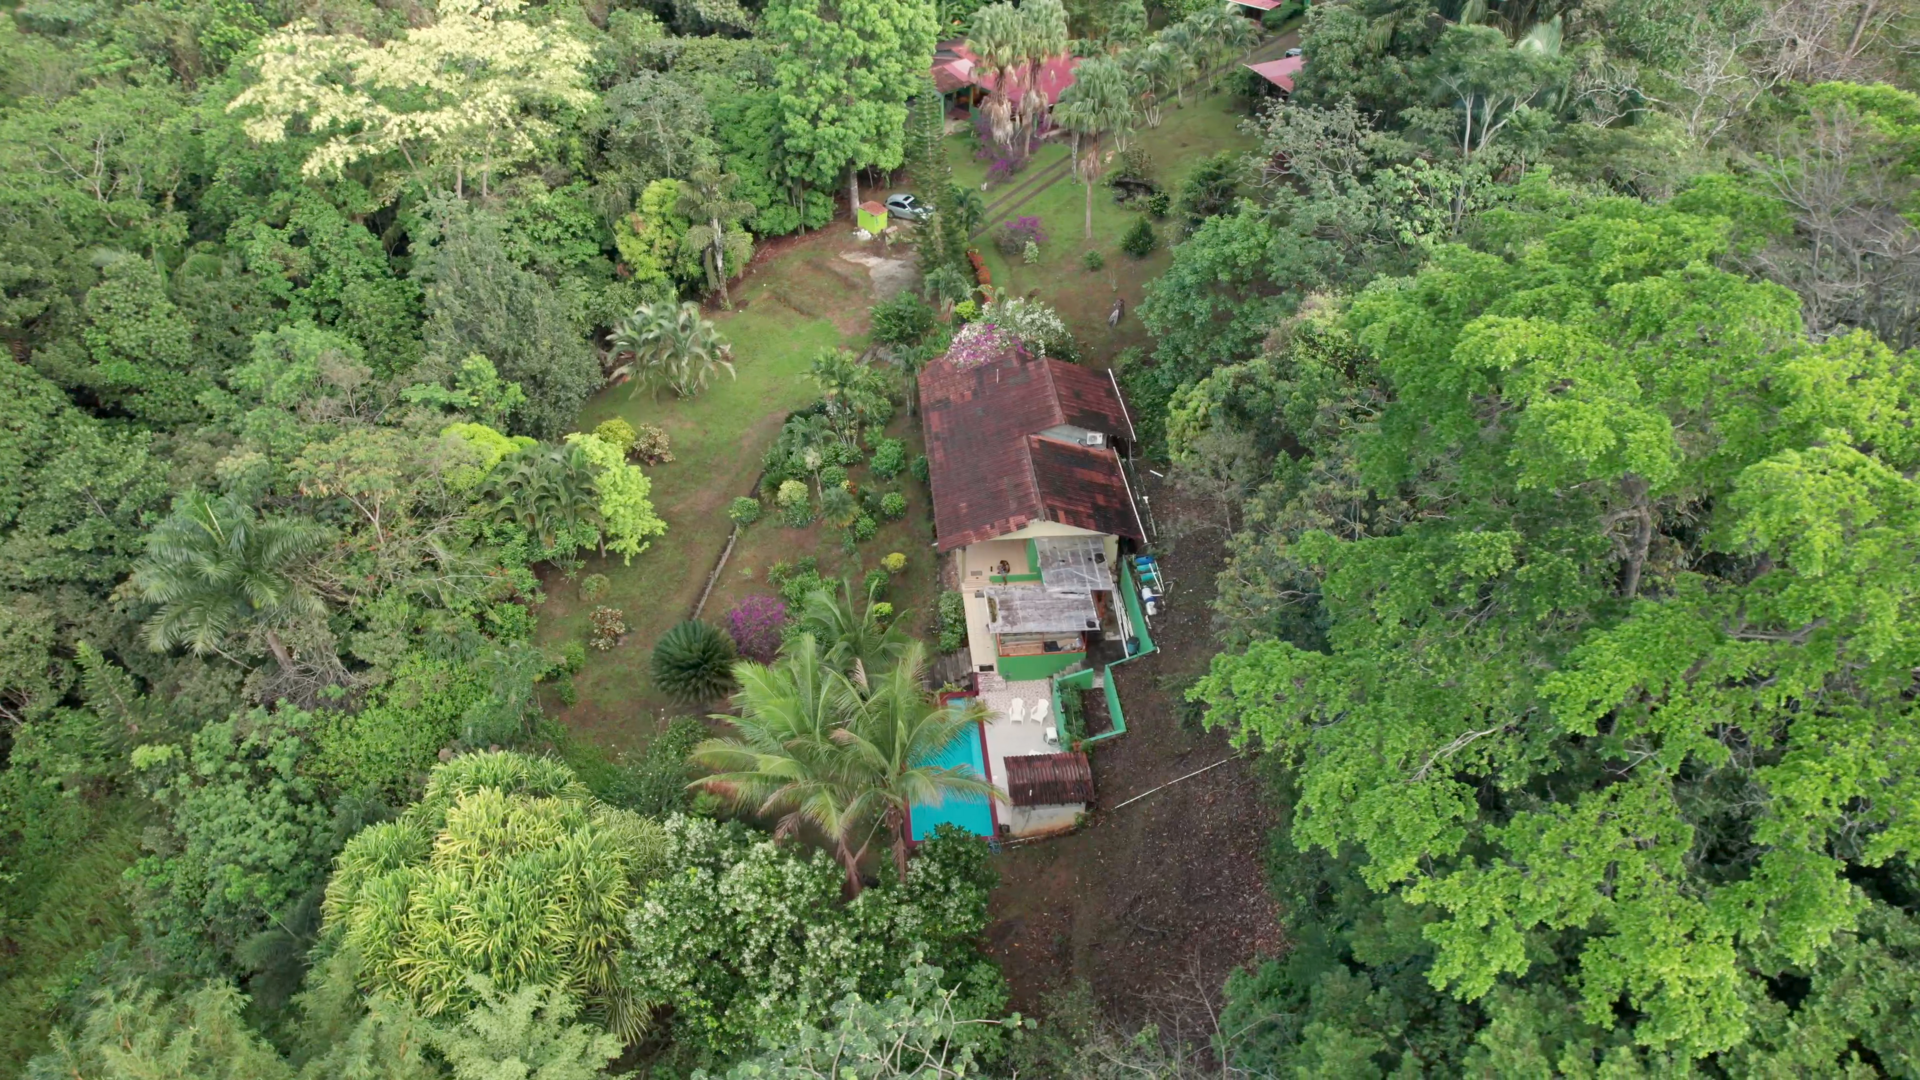 Eco-Friendly Resort Property near Santa Fe National Park, Panama